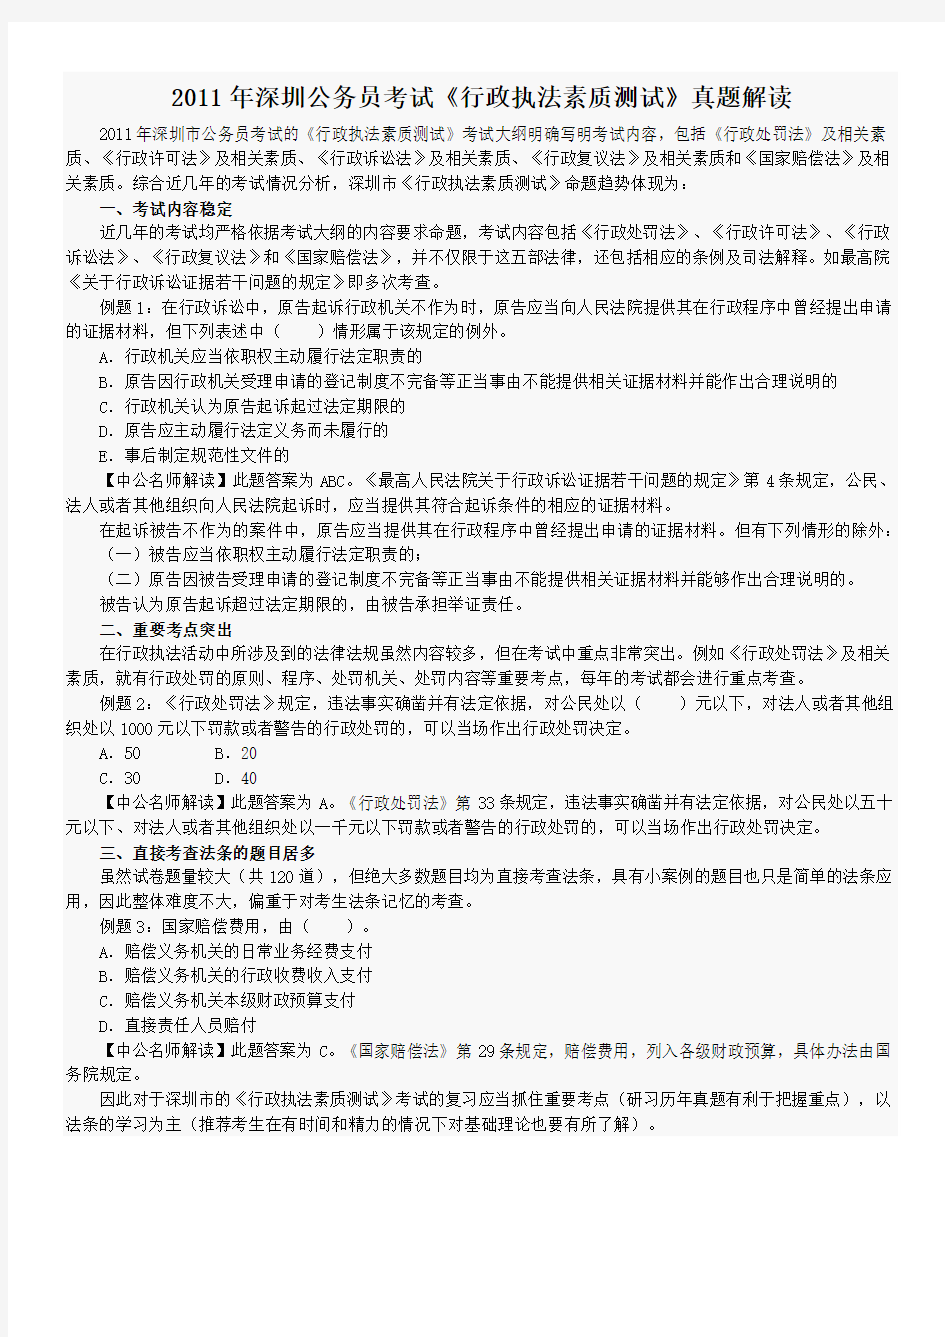 2013年深圳公务员考试《行政执法素质测试》真题解读